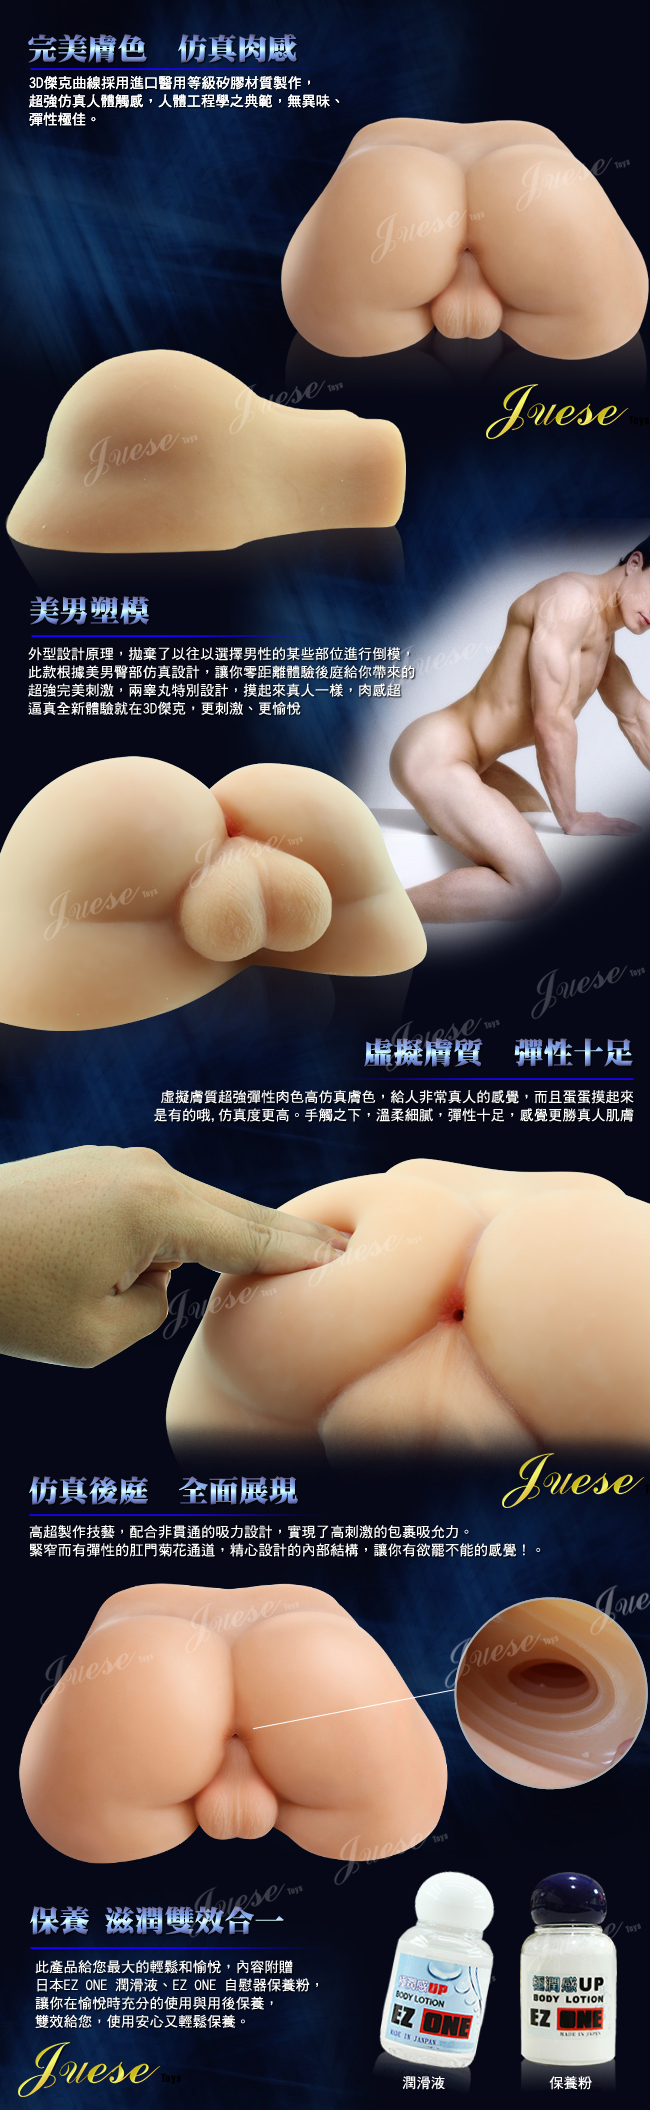 香港Juese-傑克美臀3D(仿真構造私處)重量級3Kg自慰器